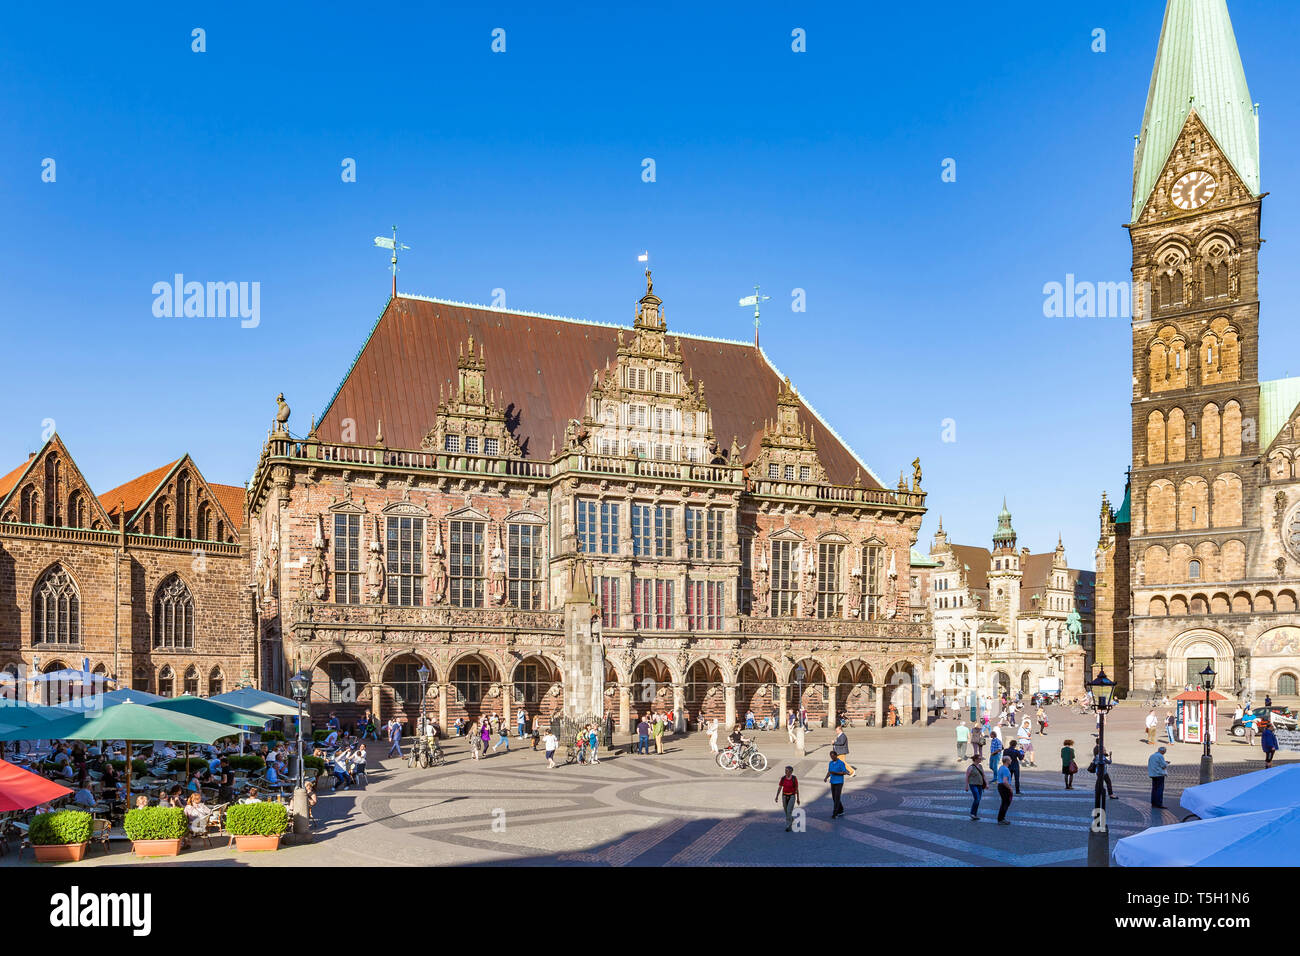 La Germania, la libera città anseatica di Brema, la piazza del mercato, cafe, Bremen Roland, il municipio Foto Stock